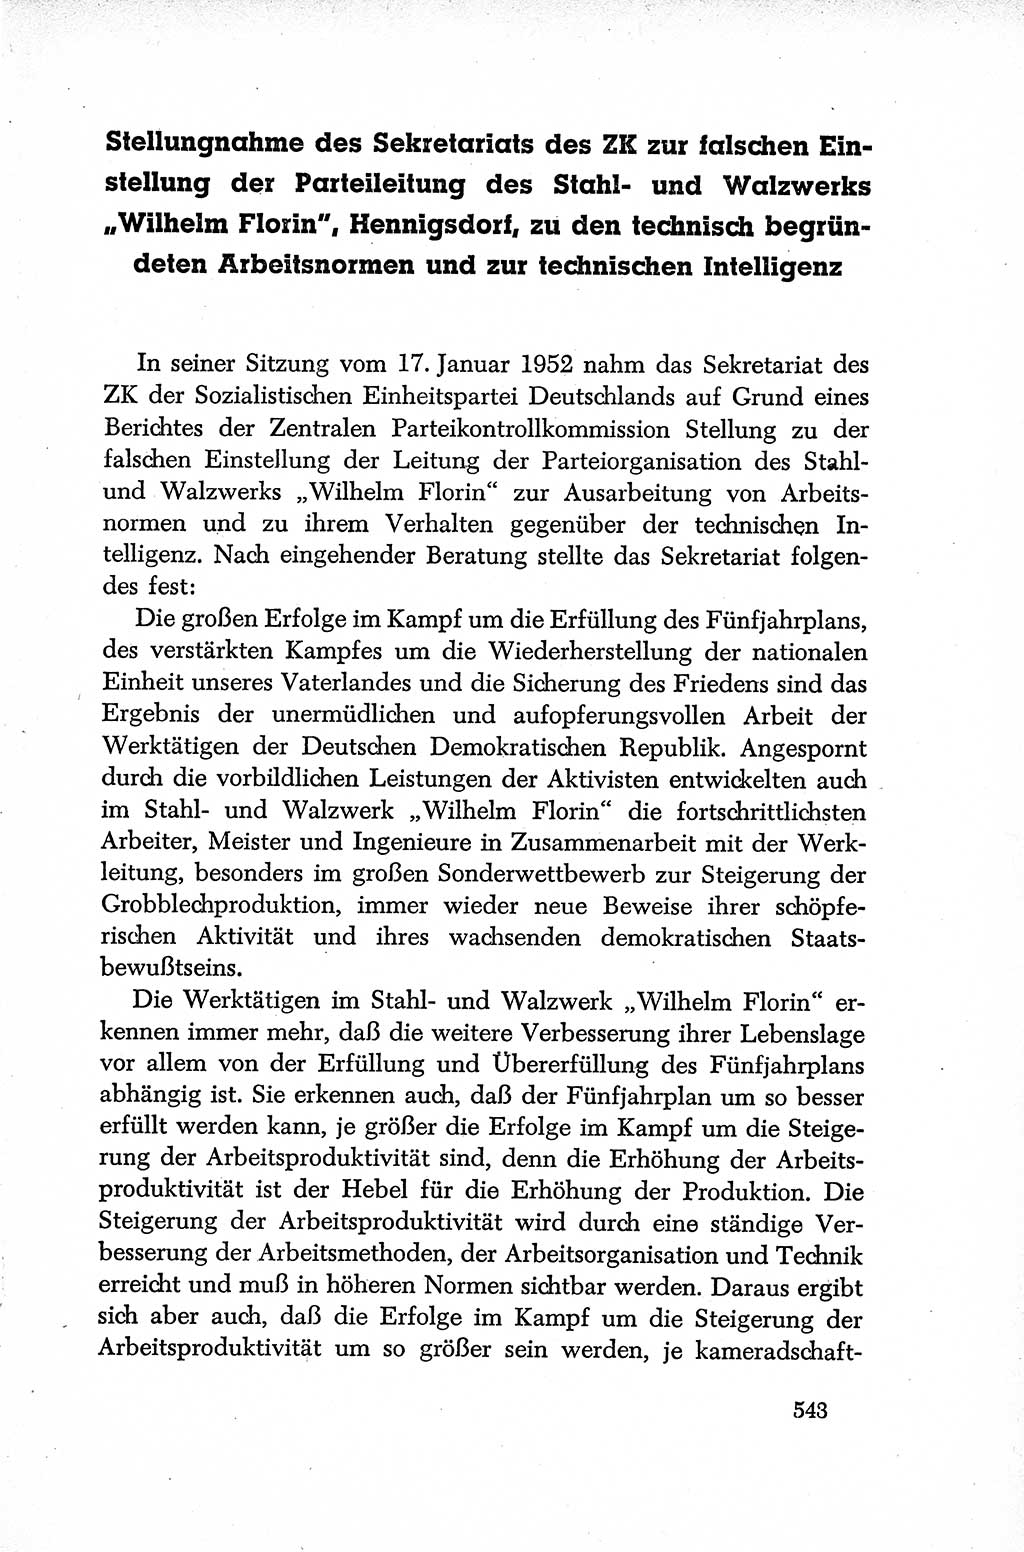 Dokumente der Sozialistischen Einheitspartei Deutschlands (SED) [Deutsche Demokratische Republik (DDR)] 1952-1953, Seite 543 (Dok. SED DDR 1952-1953, S. 543)